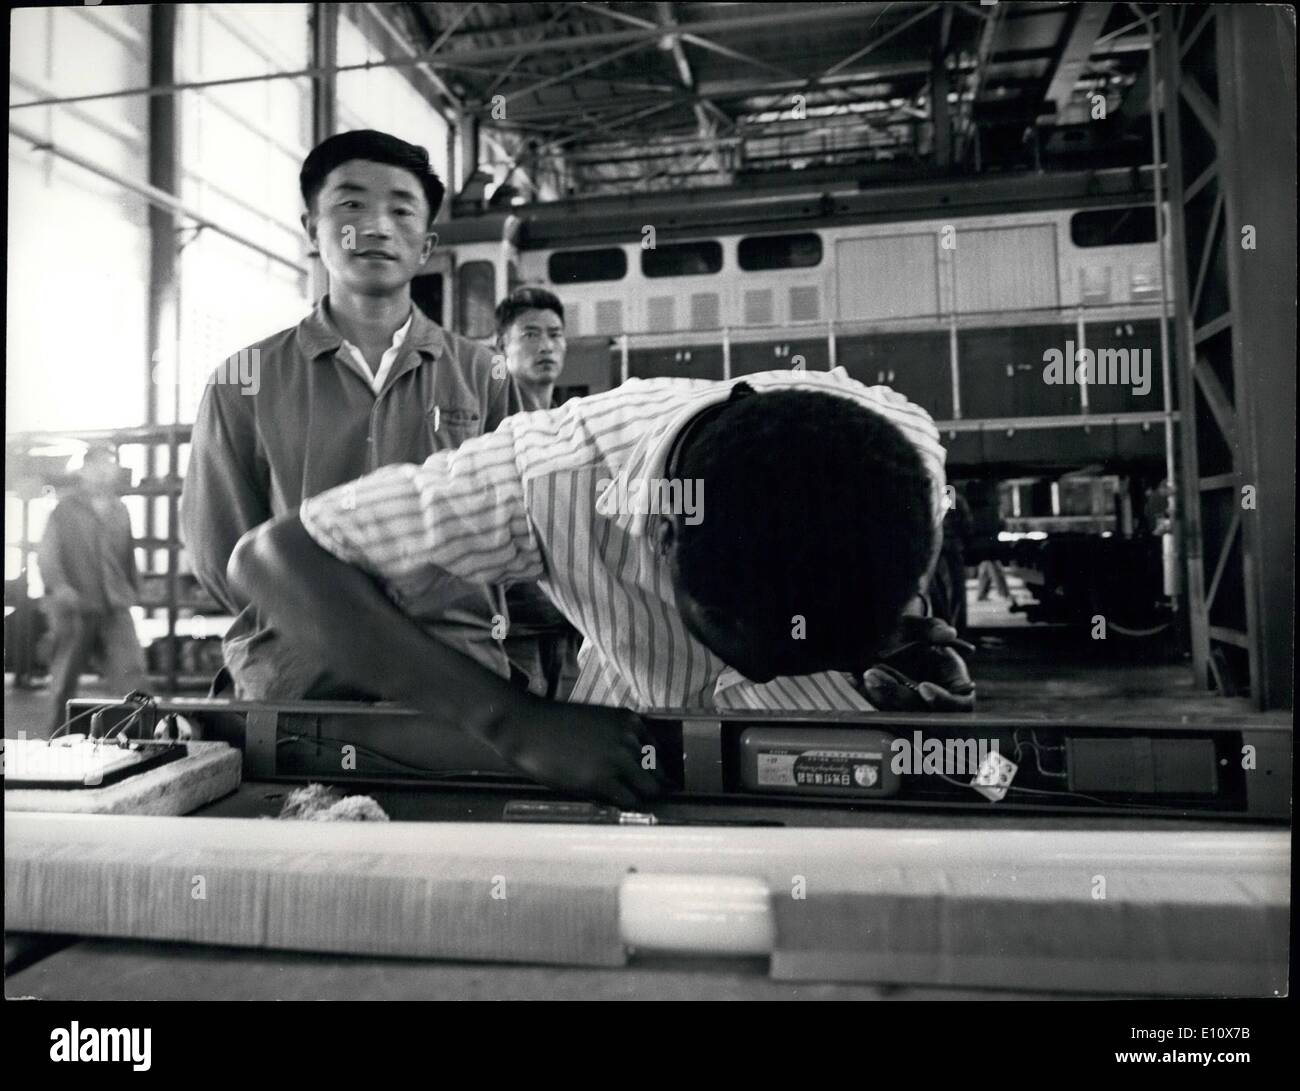 Mai 05, 1974 - ''Crédits : Camerapix'' Uhuru Railway : cargo commence à déplacer un technicien qualifié chinois forme un cheminot Tanzanien à l'École de formation à Dar es-Salaam. Banque D'Images